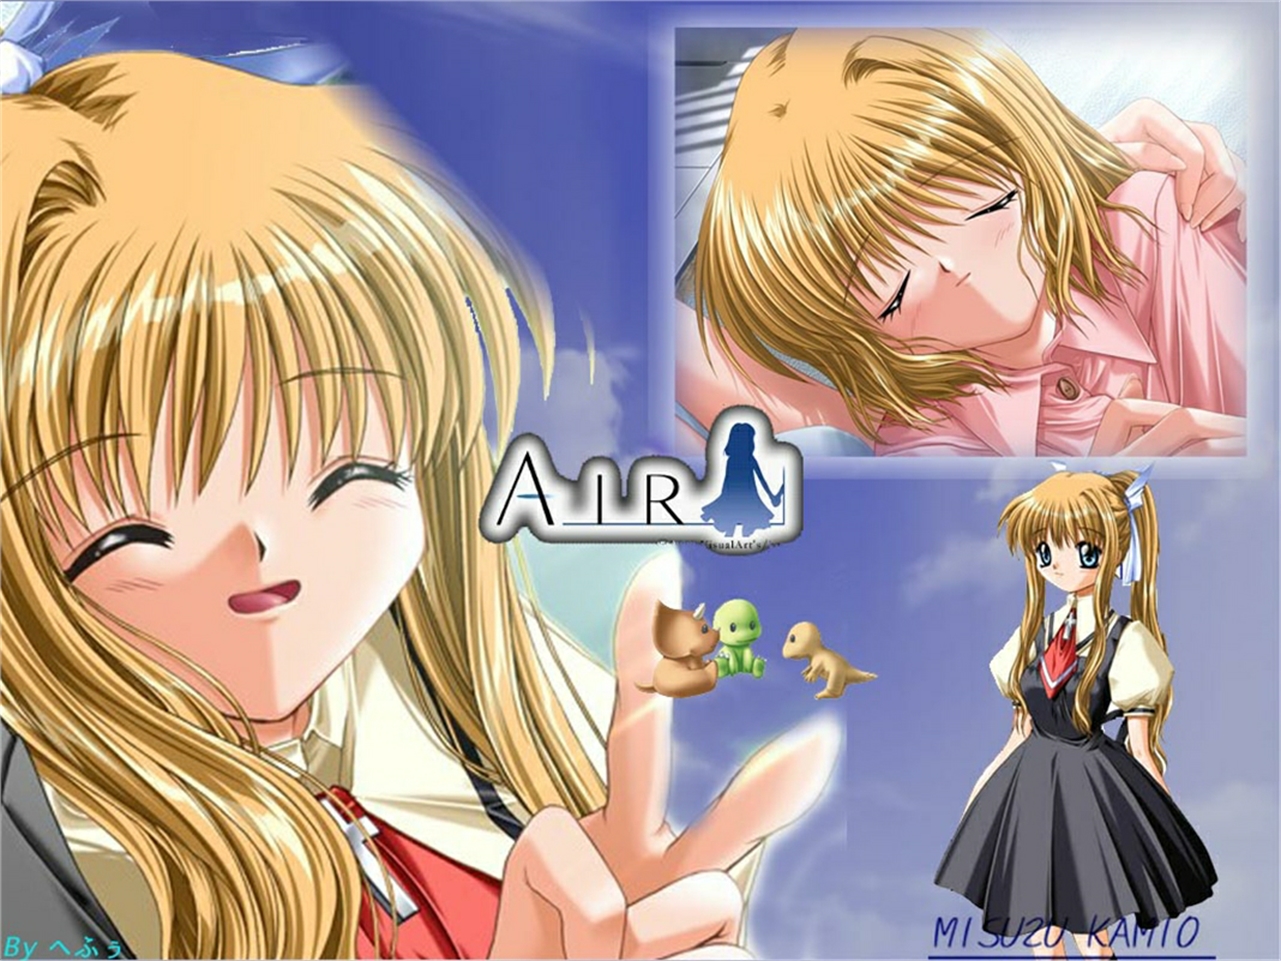 Descarga gratuita de fondo de pantalla para móvil de Aire, Animado, Misuzu Kamio.